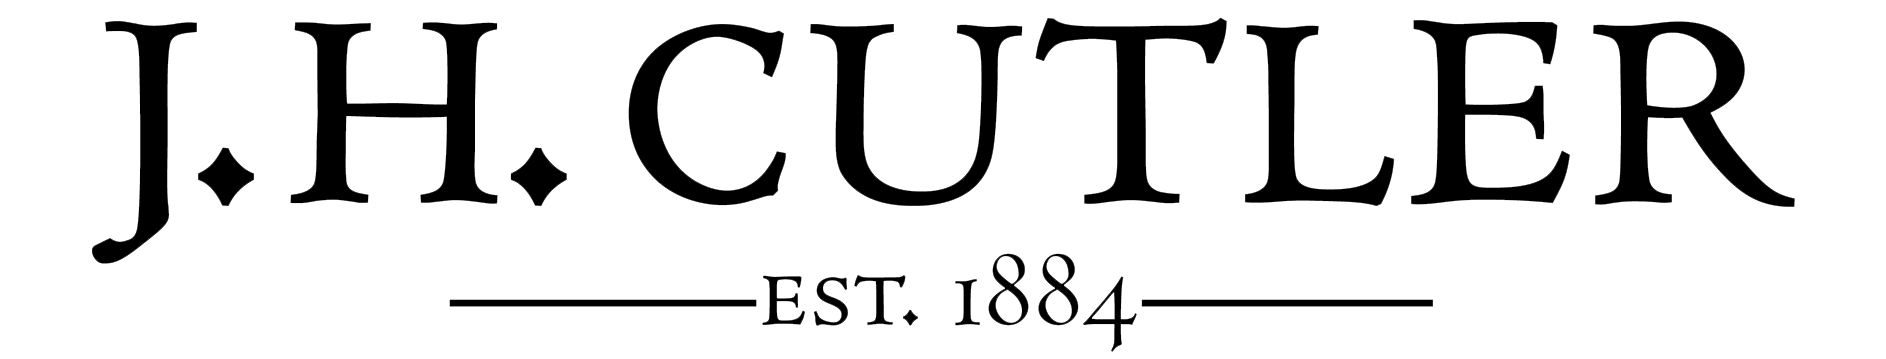 J.H. Cutler logo